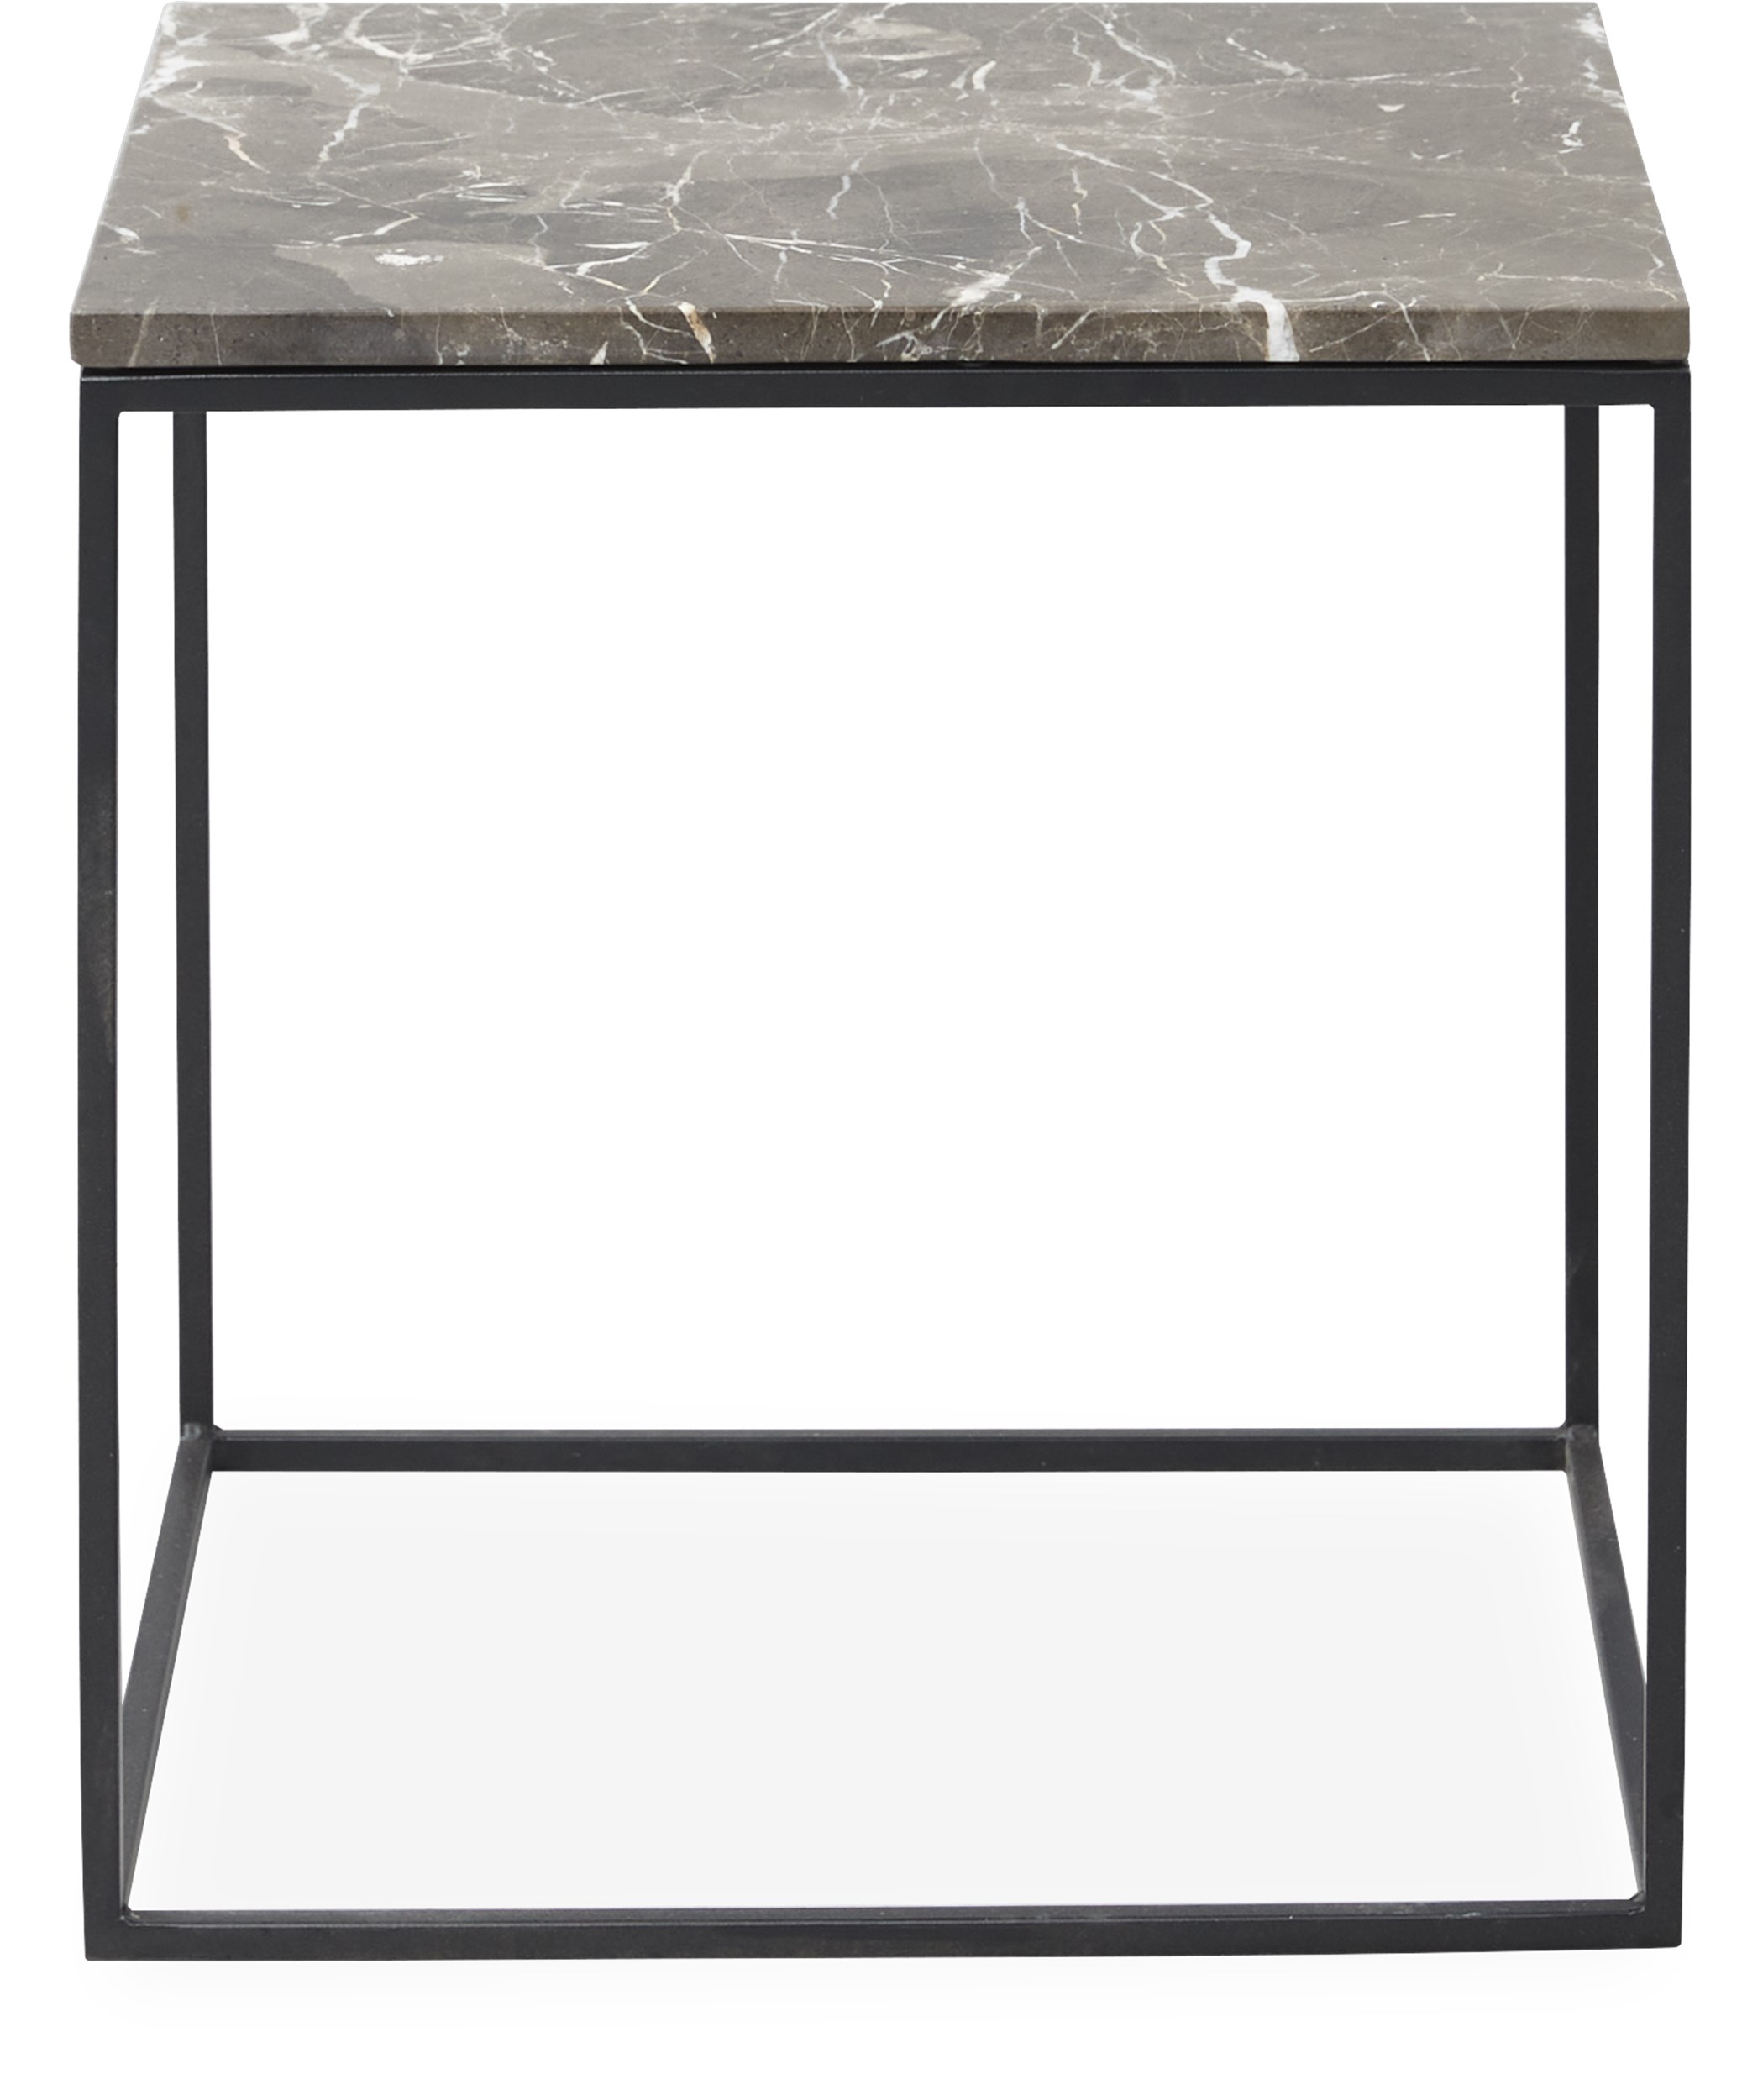 Square Soffbord 40 x 41,6 x 40 cm - Bordsskiva i brun emperador marmor och stomme i svartlackerad metall